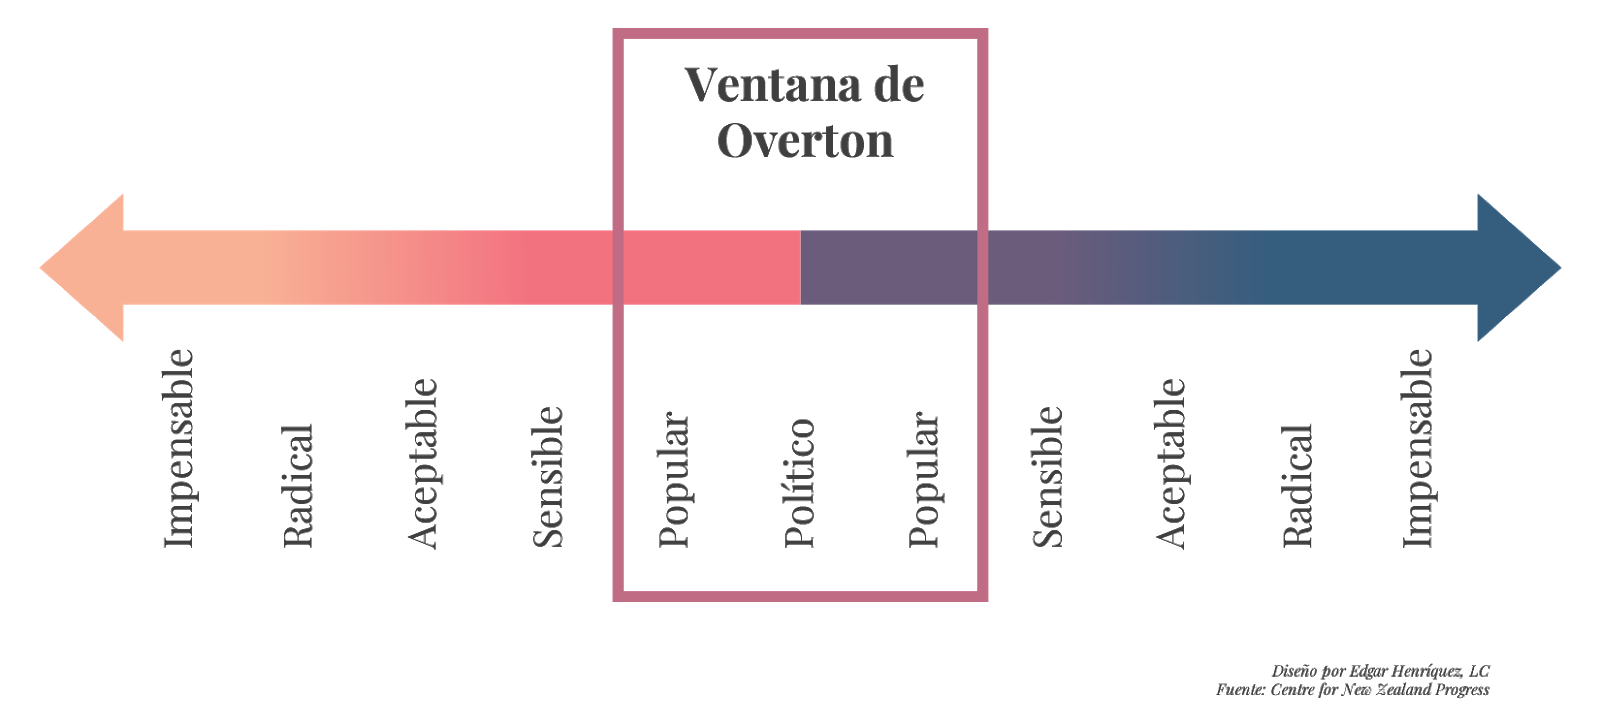 las 5 etapas de la ventana de overton